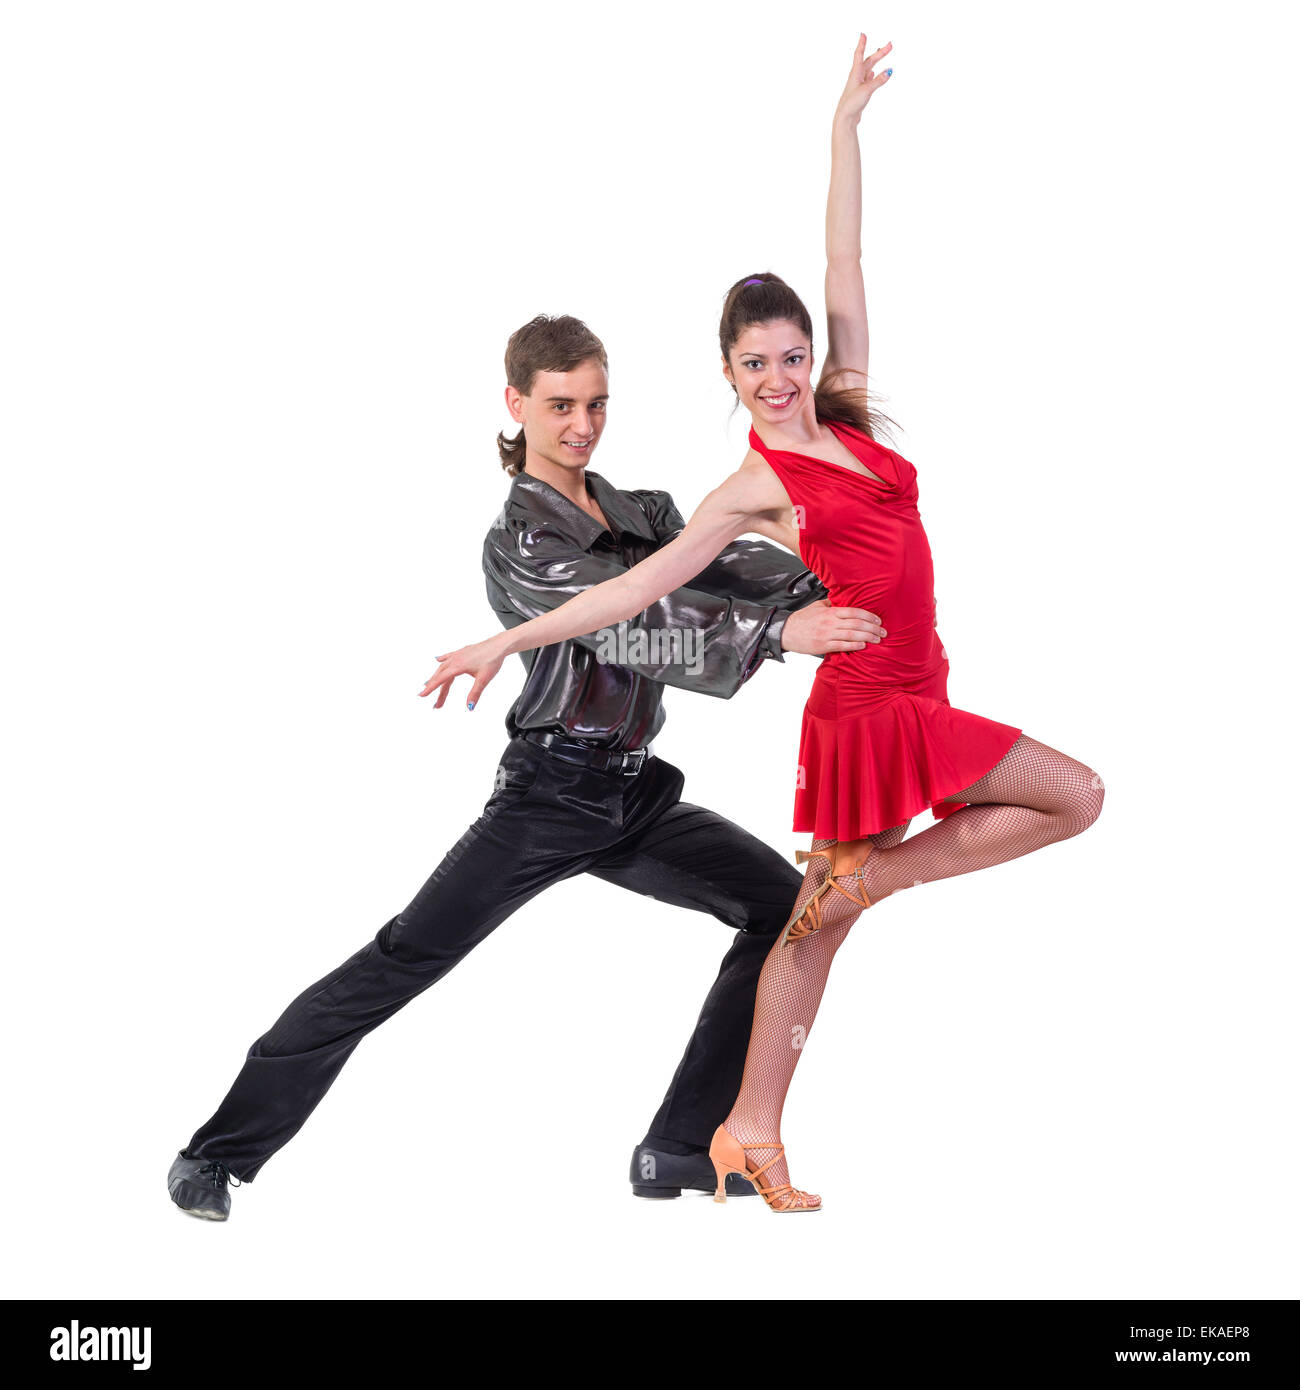 Volle Länge des jungen Balletts Paare tanzen auf weißem Hintergrund Stockfoto